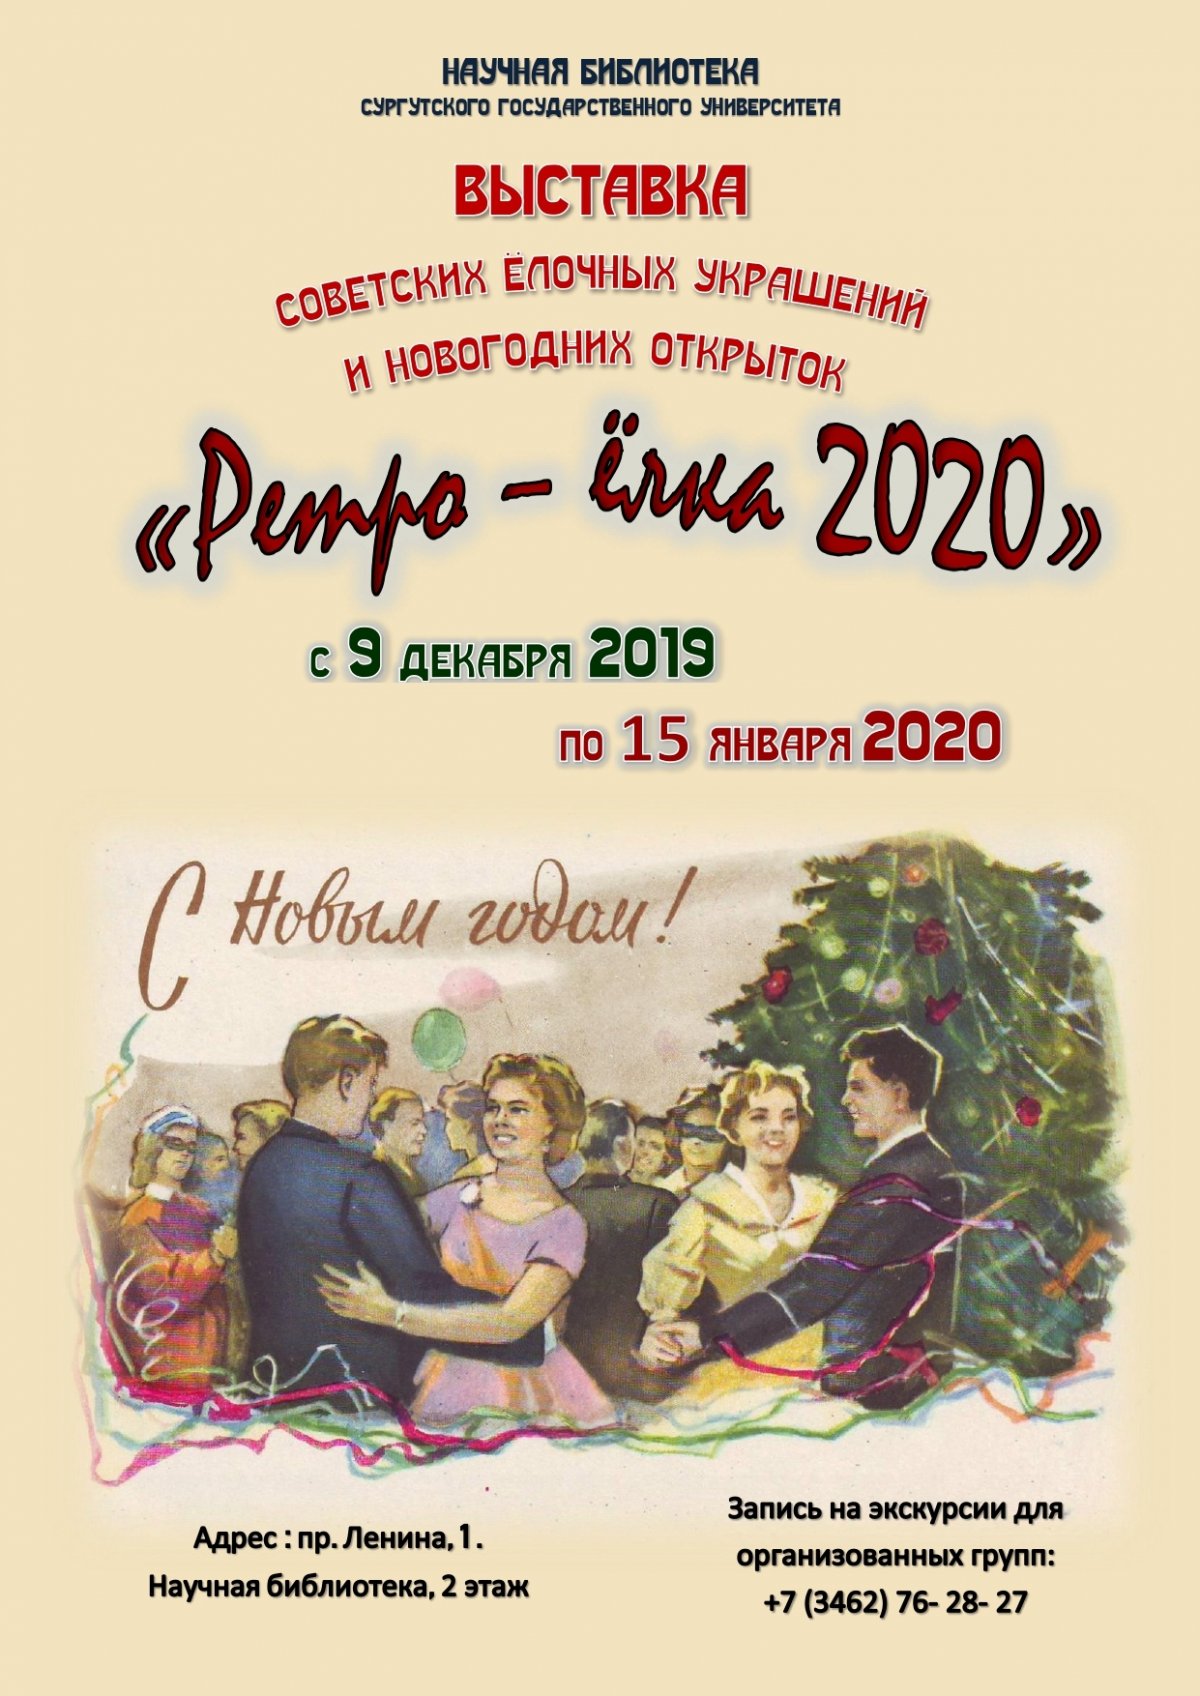 В Научной библиотеке СурГУ открылась выставка уникальных советских ёлочных игрушек, новогодних открыток и сувениров «Ретро-ёлка 2020» 🎄🎄🎄